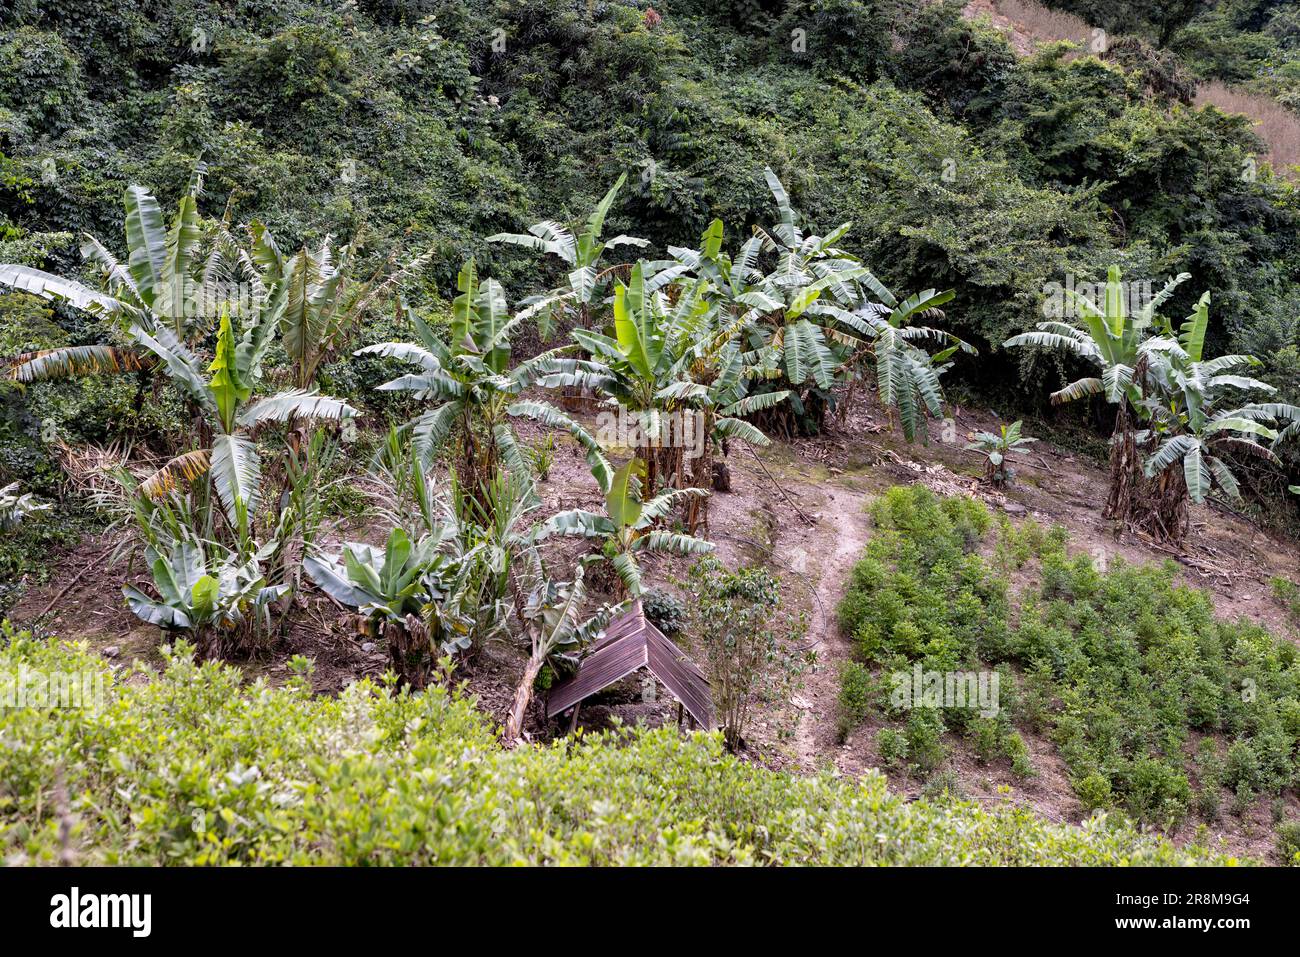 Palmiers luxuriants et verts dans une plantation dans les Andes boliviennes - Voyage et explorer l'Amérique du Sud Banque D'Images